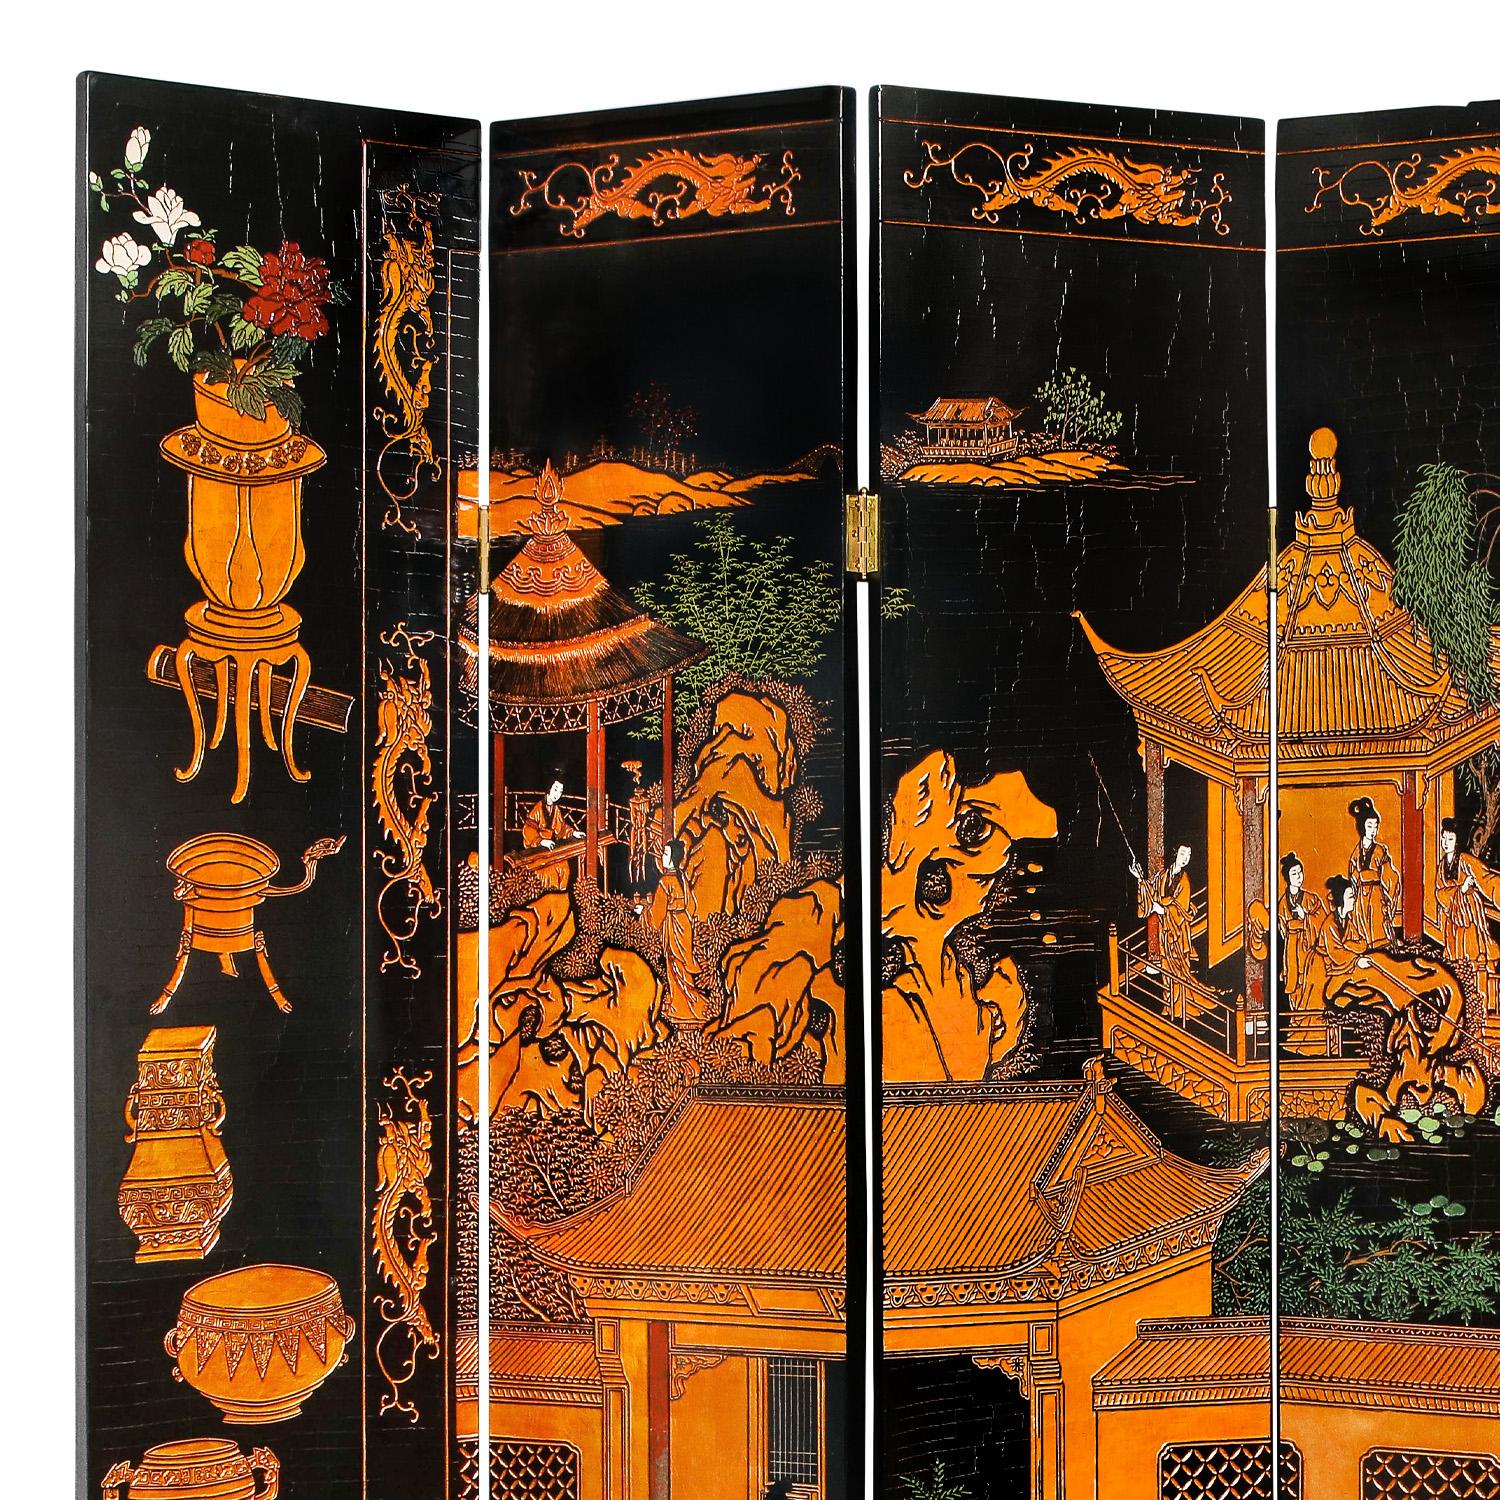 American Large 6 Panel Artisan Chinese Screen Sold Through Karl Springer, 1980s